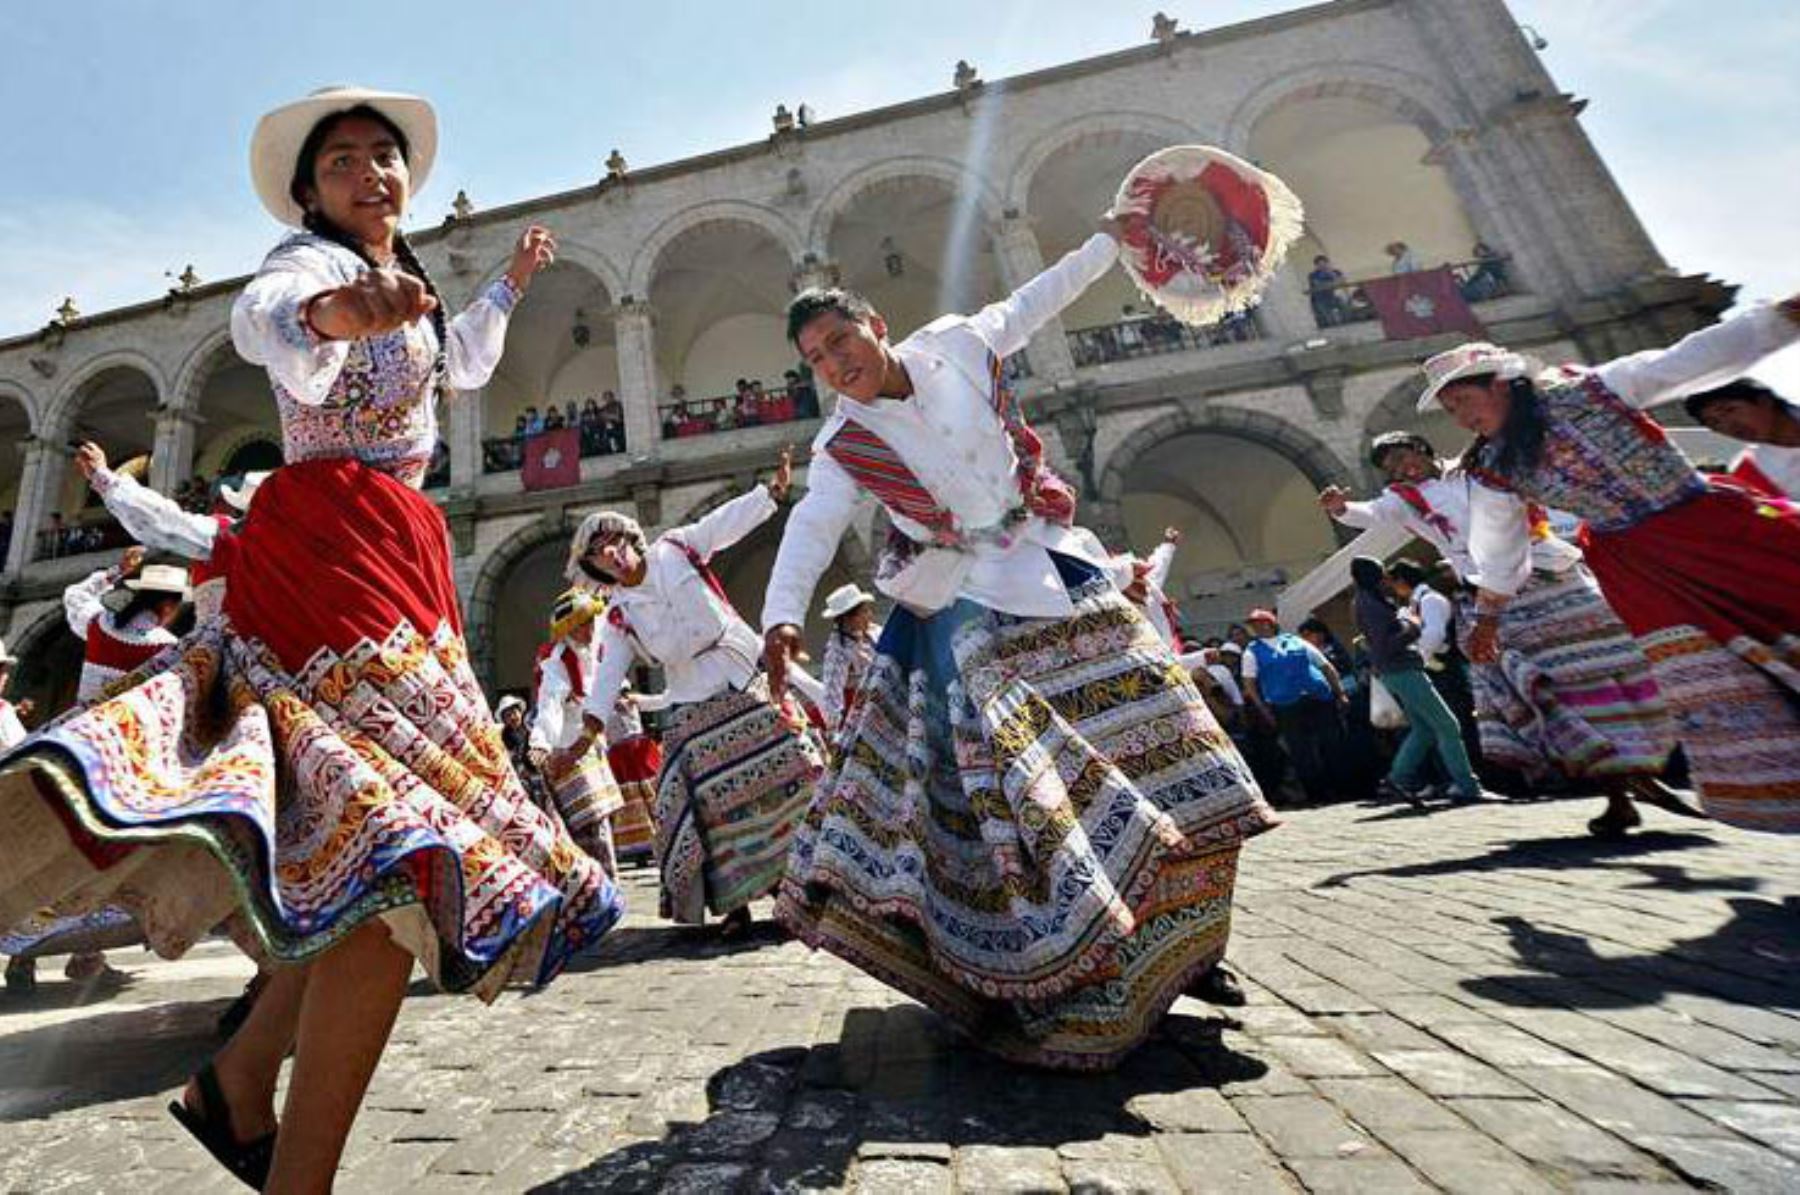 Por primera vez, un grupo de 120 parejas que bailan el tradicional Wititi participarán este año del concurso con motivo de la Fiesta de la Virgen de la Candelaria de Puno, informó alcalde de la provincia de Caylloma, Rómulo Tinta. ANDINA/Difusión